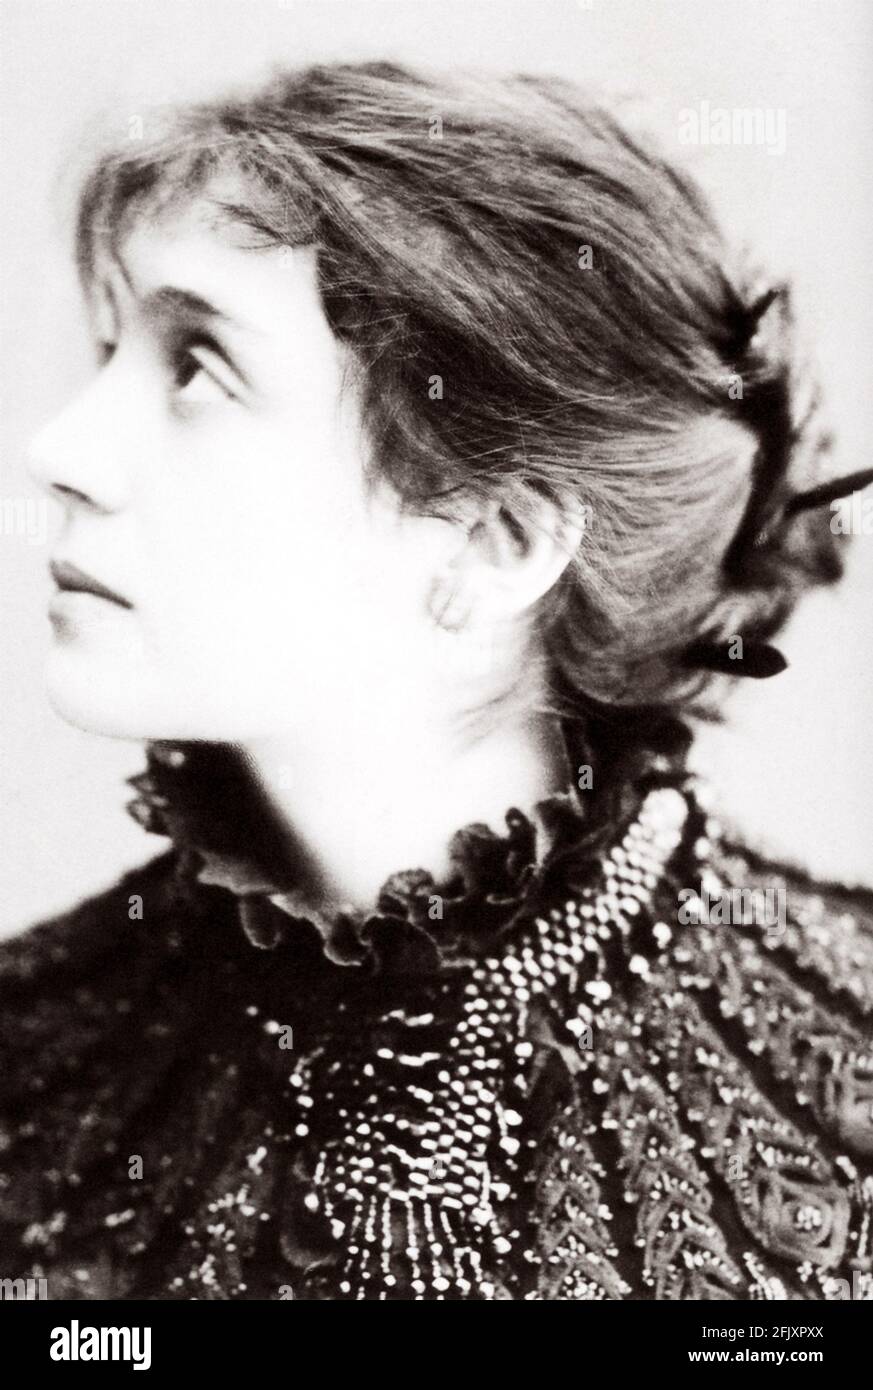 1880 ca, ITALIA : la più celebrata attrice italiana ELEONORA DUSE ( 1858 - 1924 ) quando era giovane , amante del poeta GABRIELE D'ANNUNZIO - TEATRO - TEATRO - DANNUNZIO - D'ANNUNZIO - divina - attrice teatrale - profilo --- Archivio GBB Foto Stock